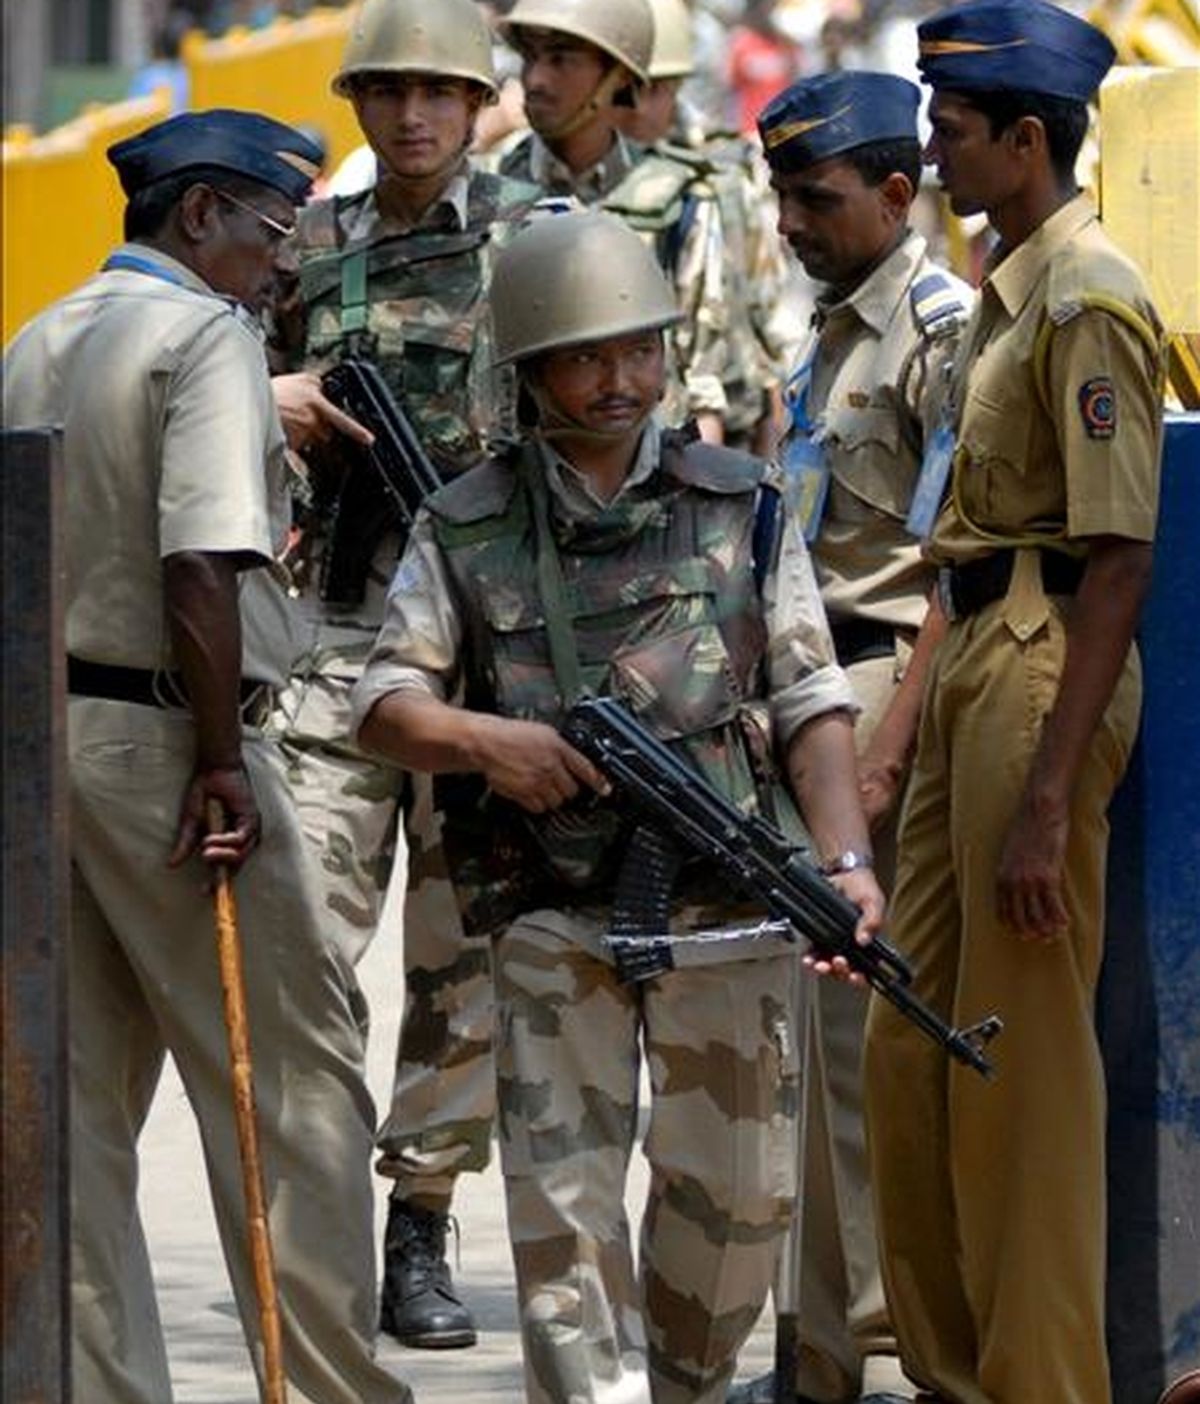 Soldados indios patrullan en el exterior de la cárcel de Arthur Road en Bombay, India, donde está recluido el único terrorista capturado vivo durante el atentado de Bombay del pasado mes de noviembre.